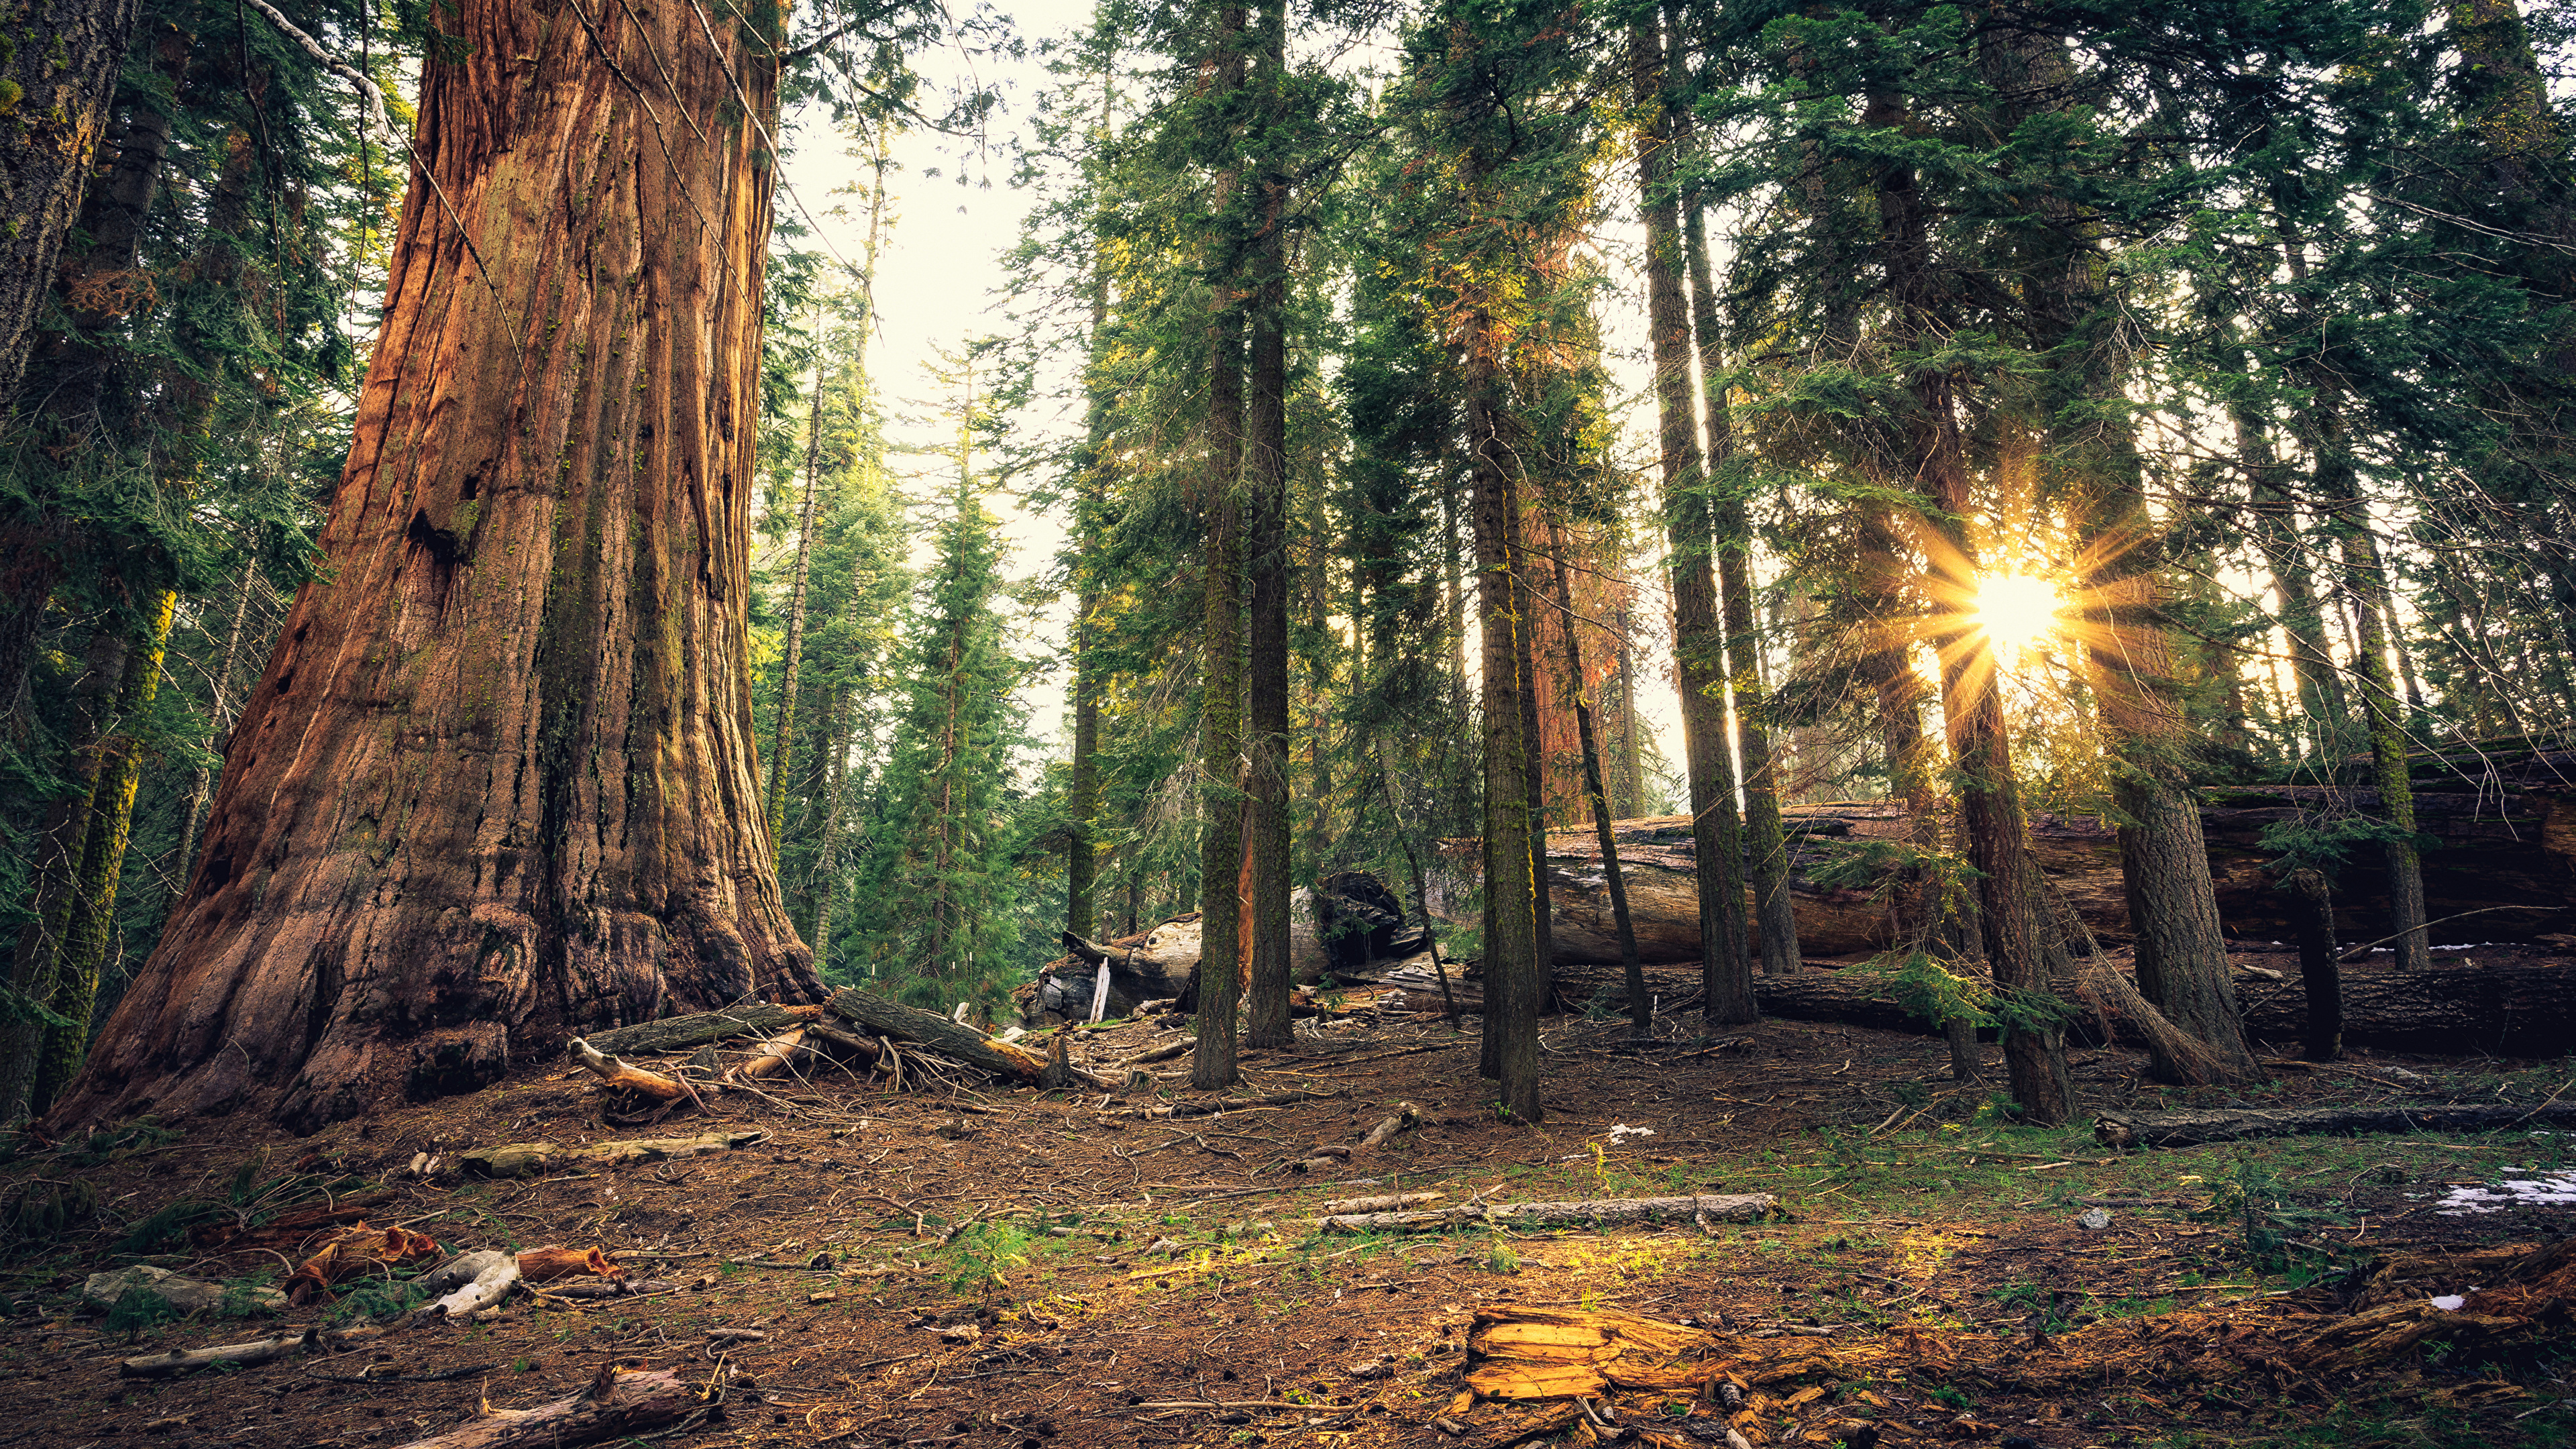 壁紙 3840x2160 アメリカ合衆国 公園 森林 Sequoia National Park カリフォルニア州 木 光線 自然 ダウンロード 写真